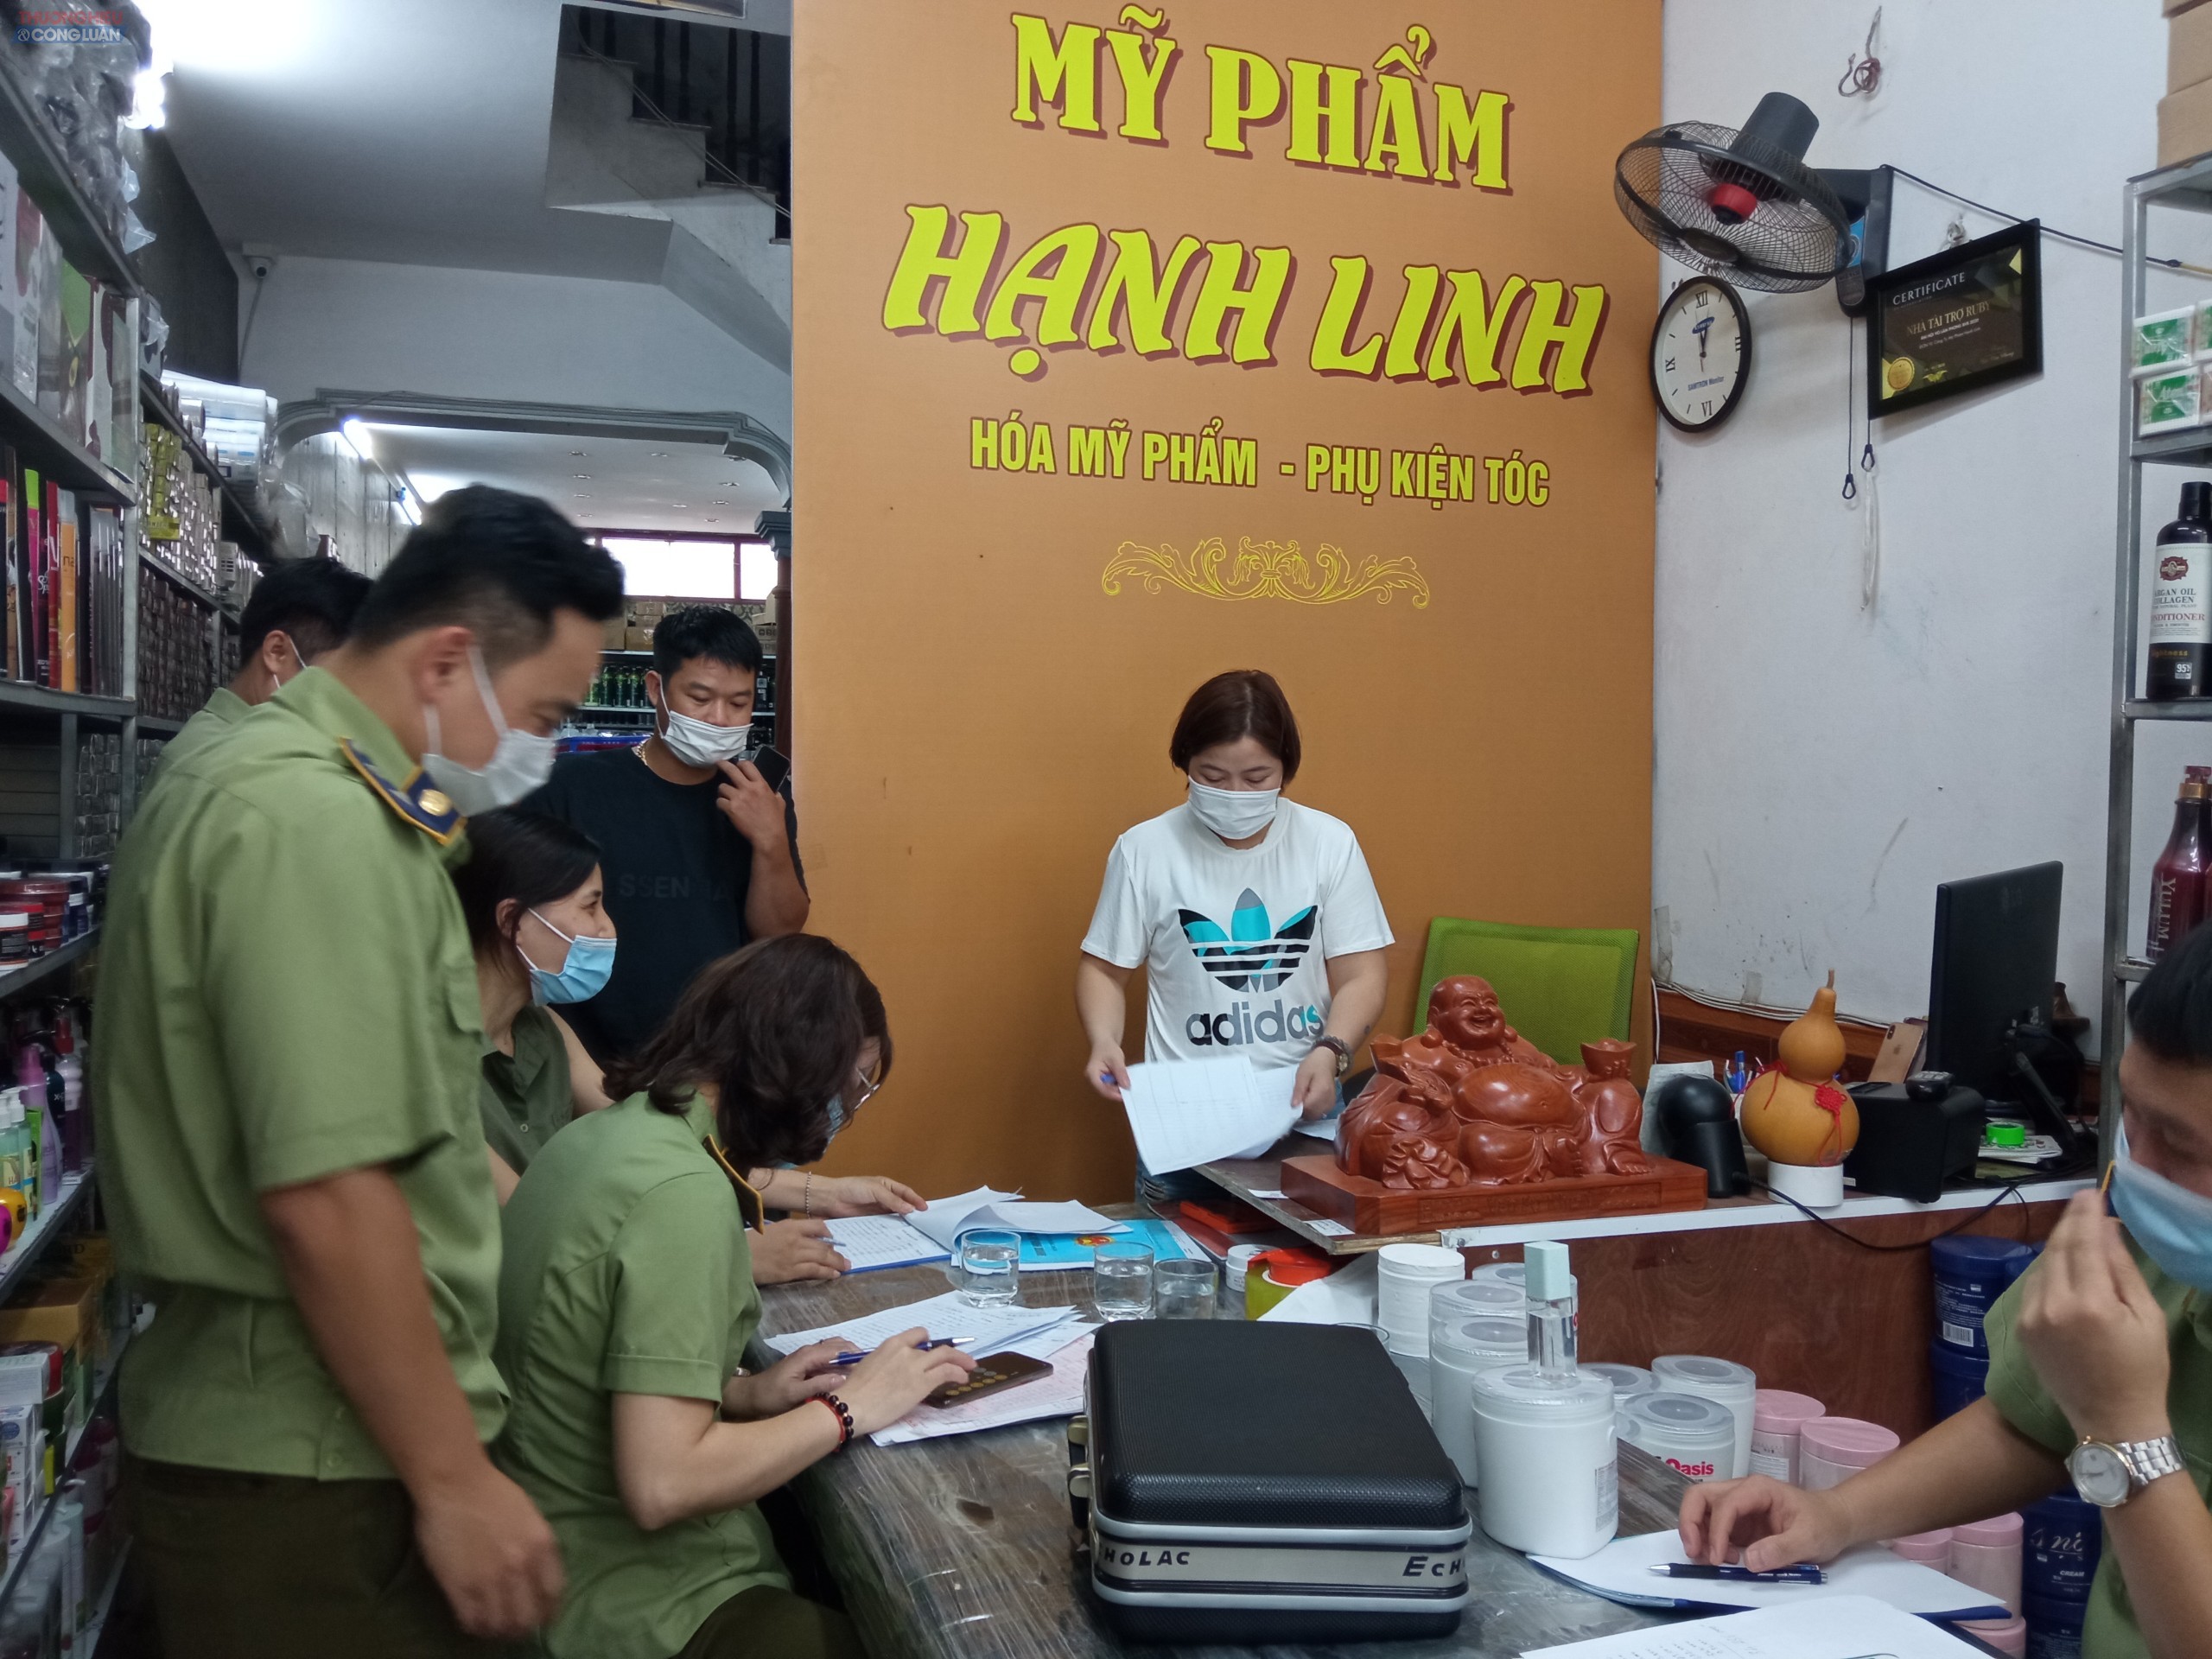 Đoàn liên ngành tiến hành kiểm tra cơ sở mỹ phẩm Hạnh Linh